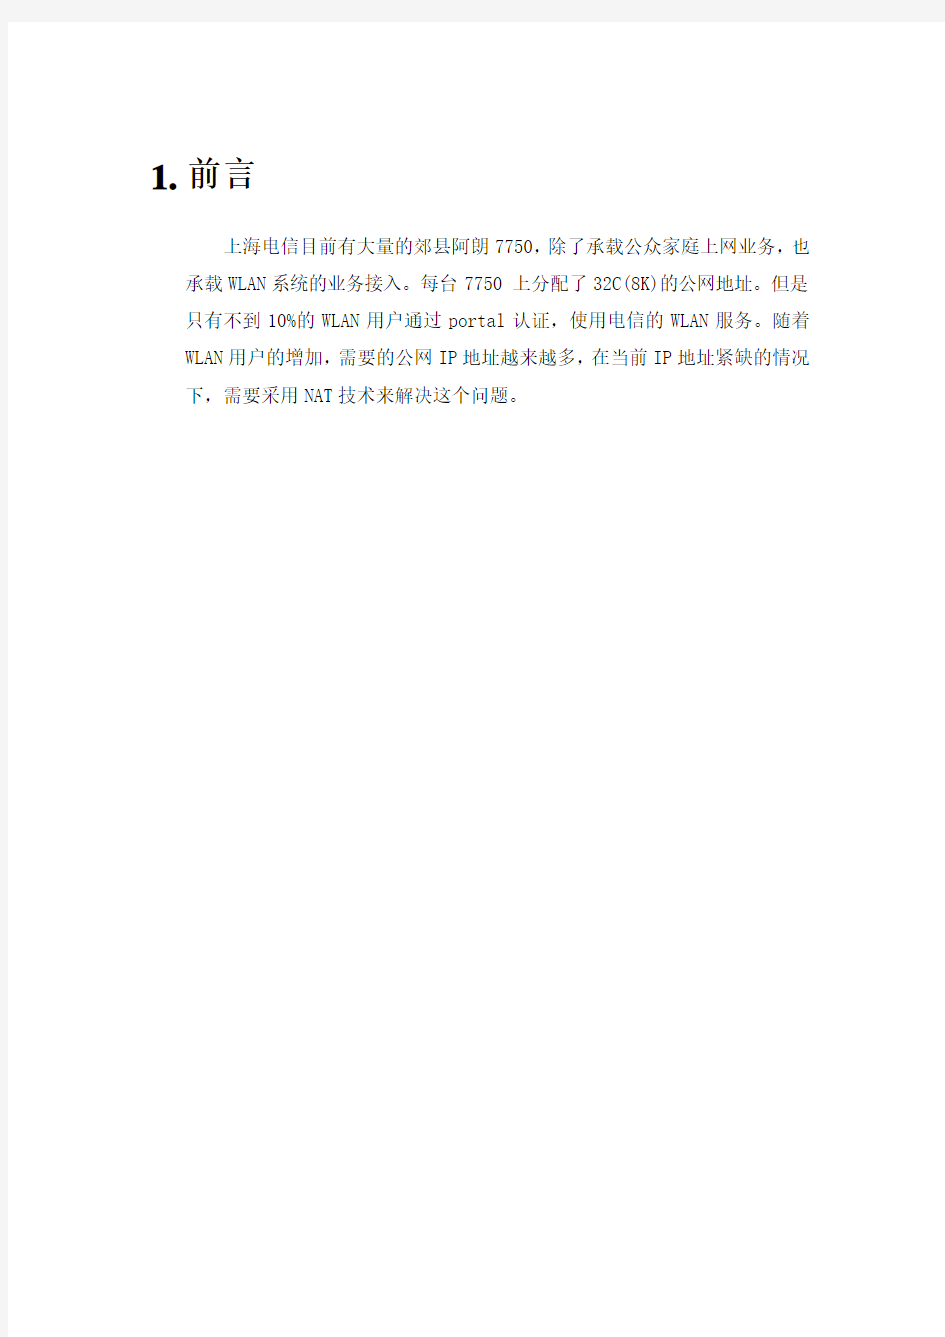 上海电信WLAN测试报告-阿朗7750资料